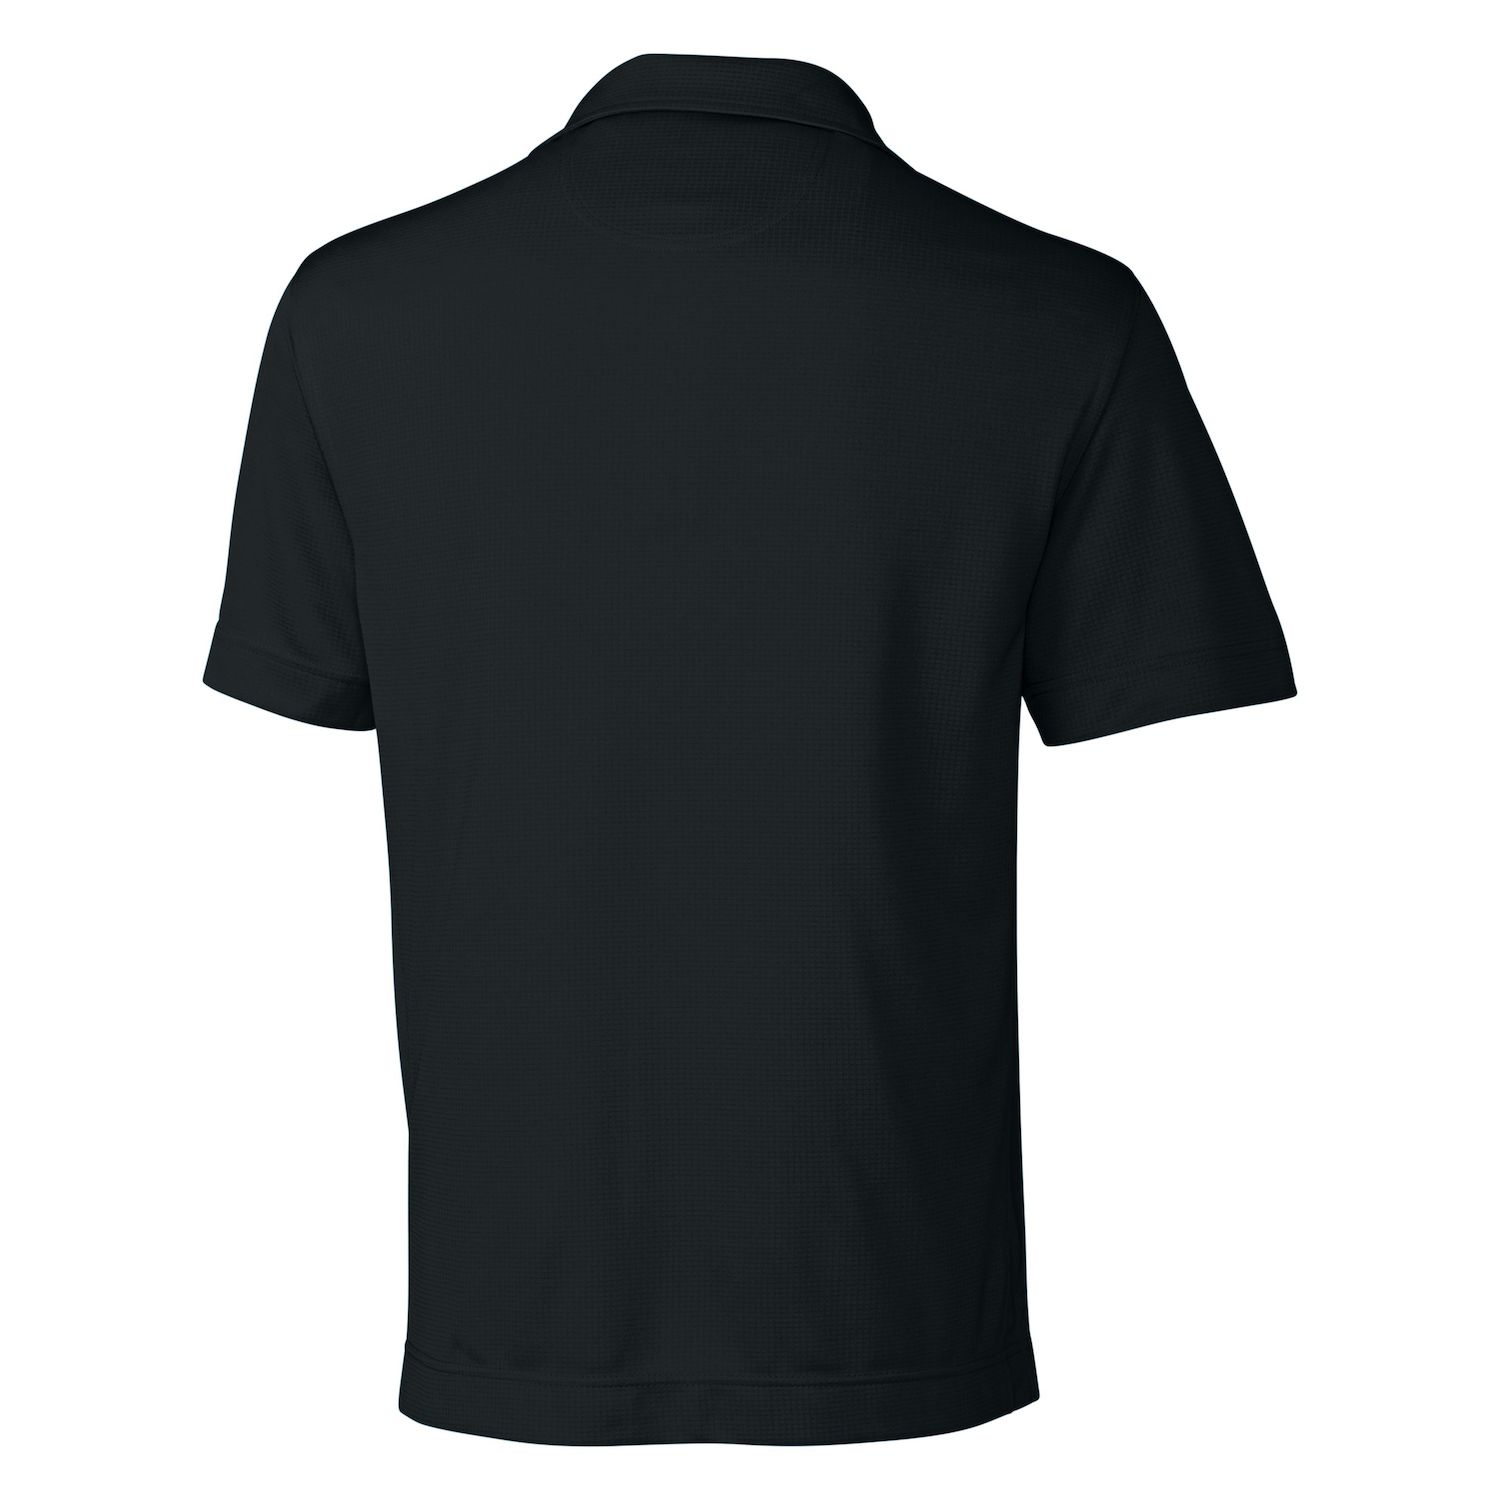 Текстурированная однотонная мужская футболка-поло CB Drytec Genre Cutter & Buck brabantia pizza cutter plus blade guar dark grey